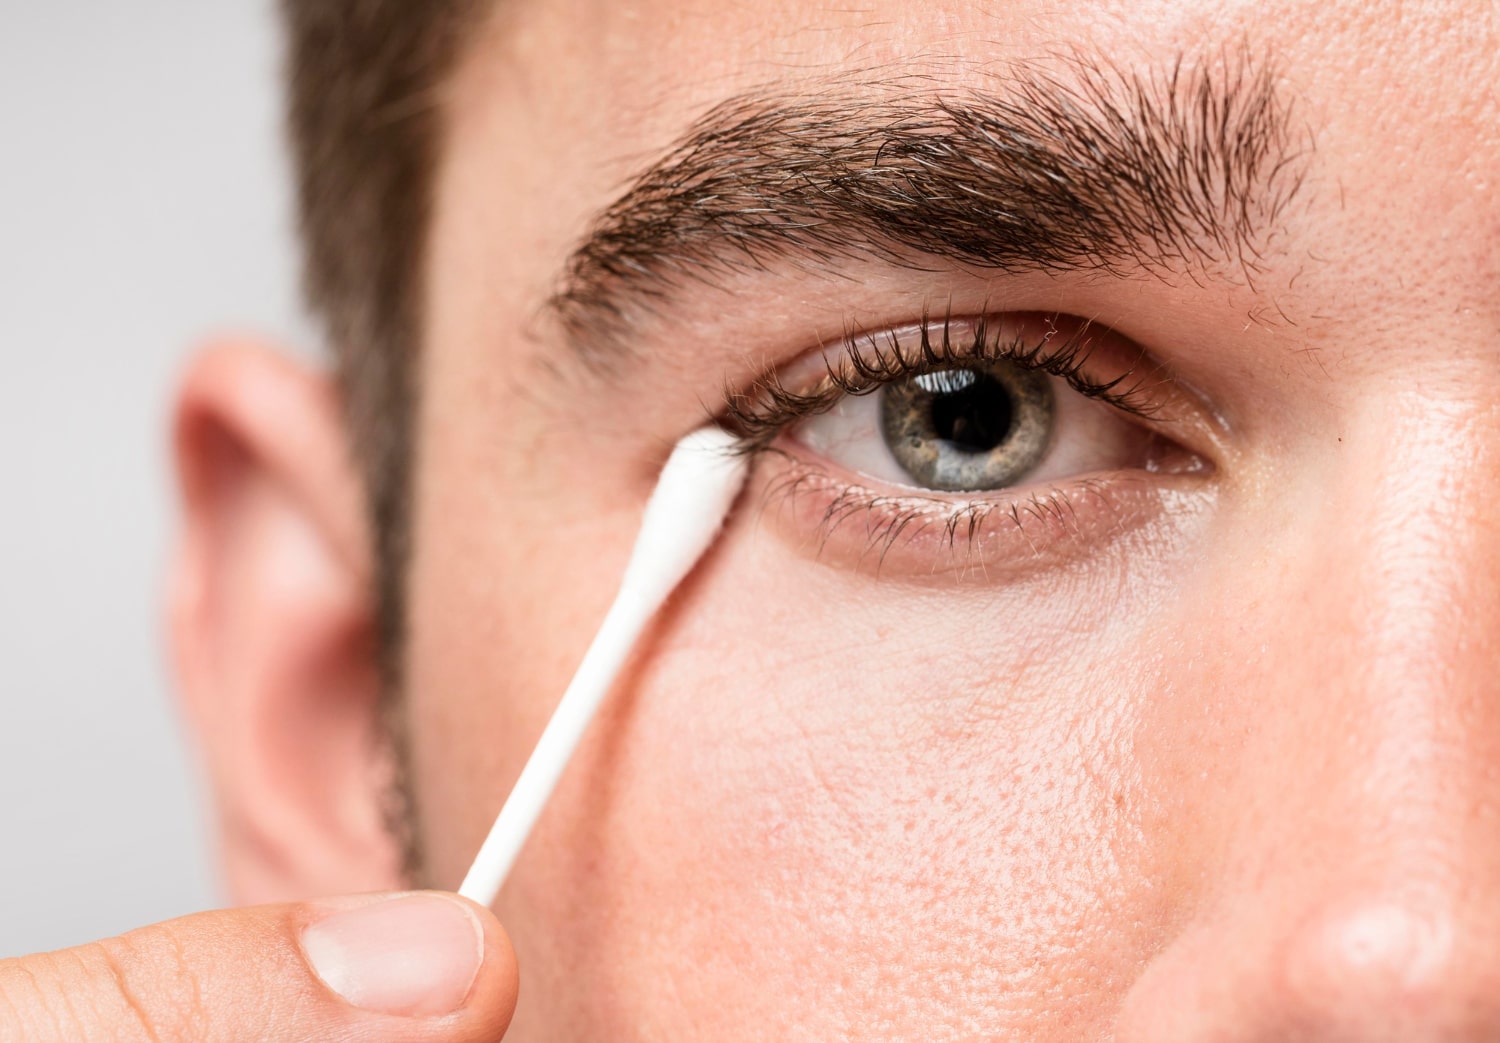 משחת סינטומיצין 3% לעיניים - תרופה עבור דלקות עיניים